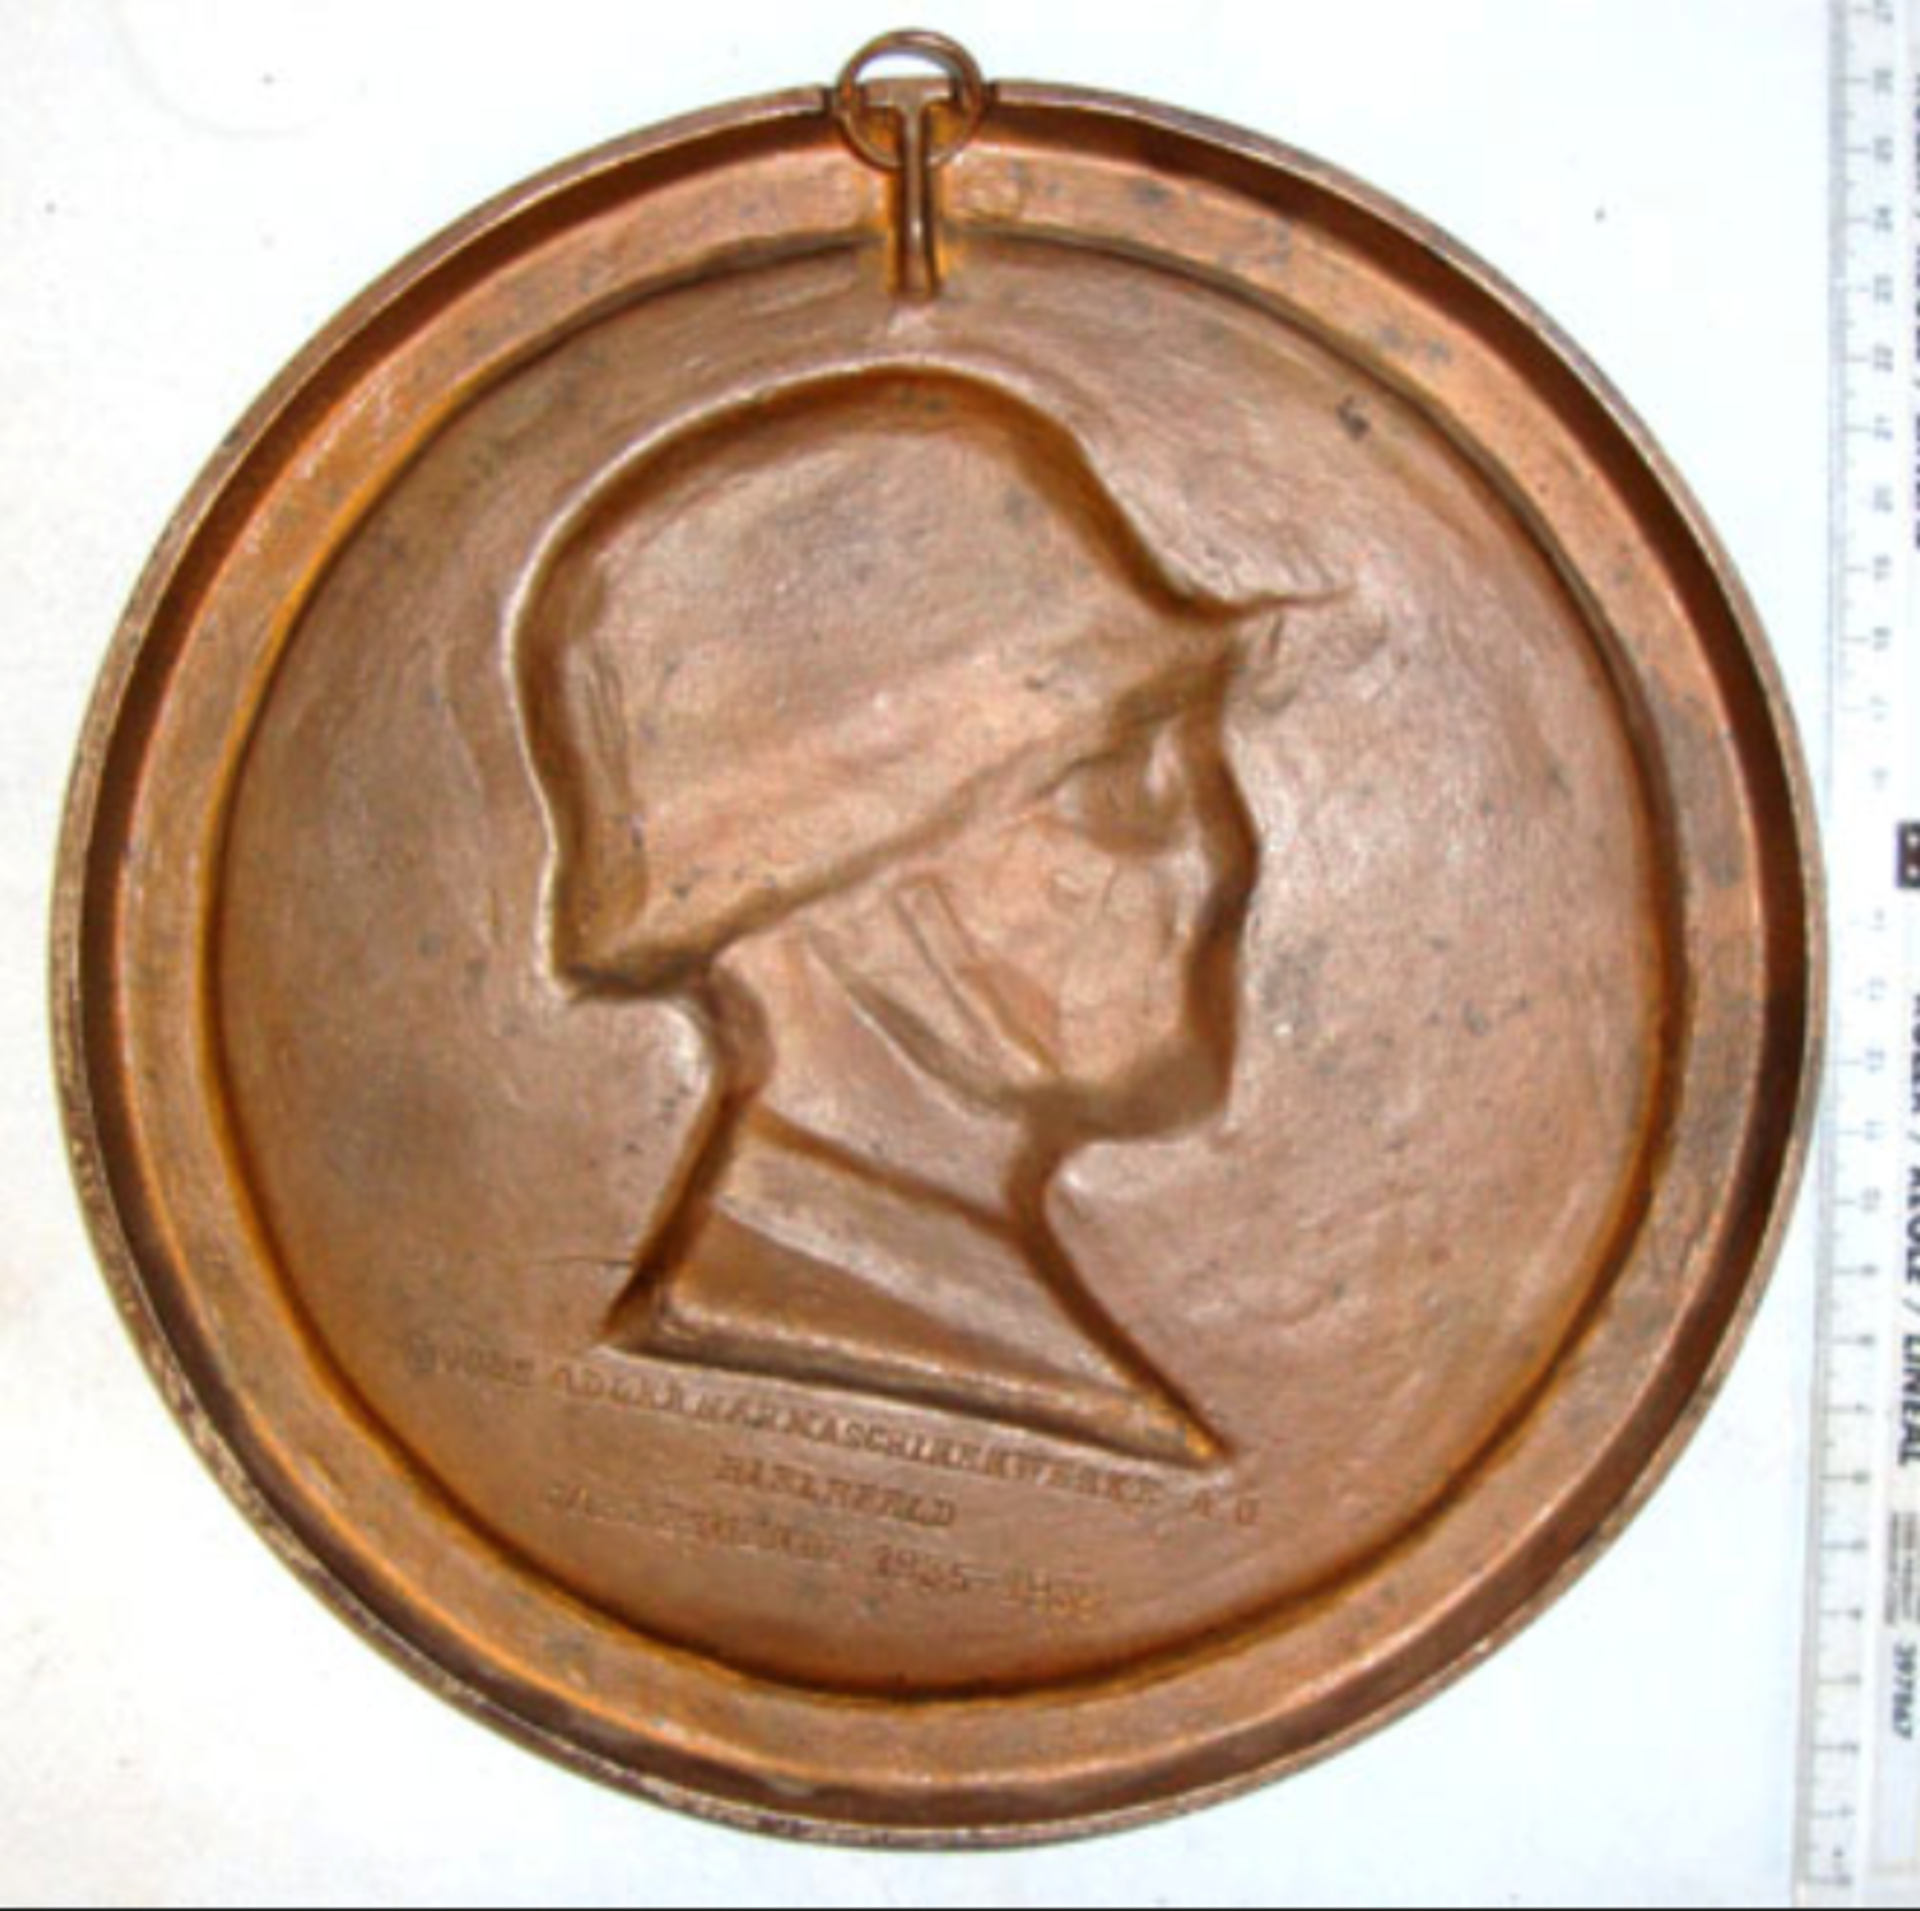 Original, Cast Bronze, Nazi Era 1935-1936 Dated Kochs Adlern A H Maschinen Werke Plaque - Image 3 of 3